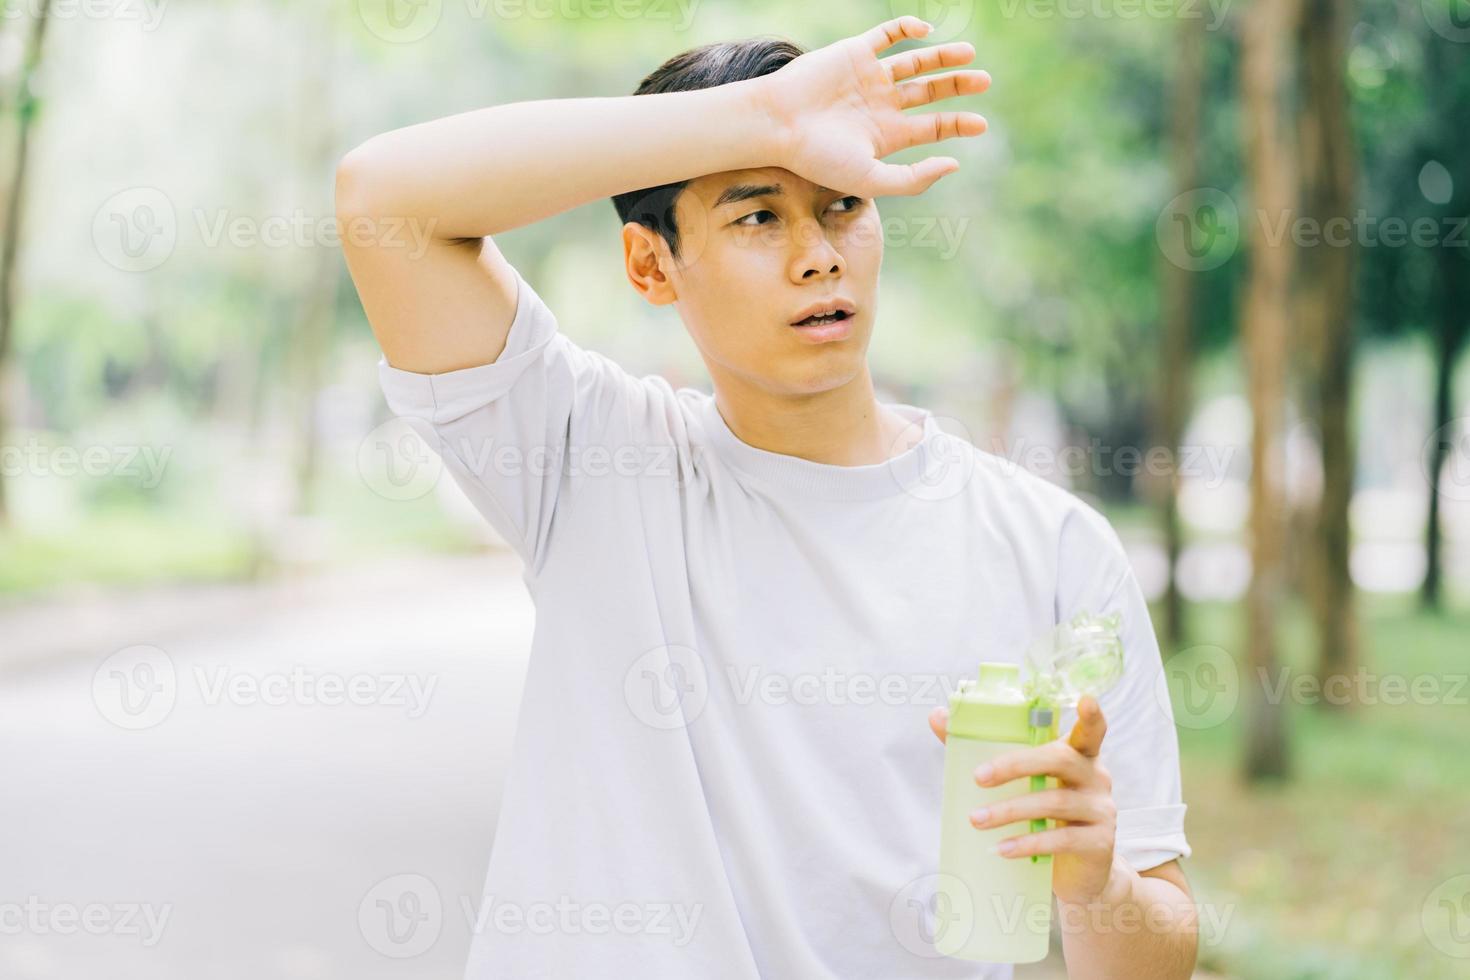 homme asiatique se reposant après avoir fait du jogging dans le parc photo